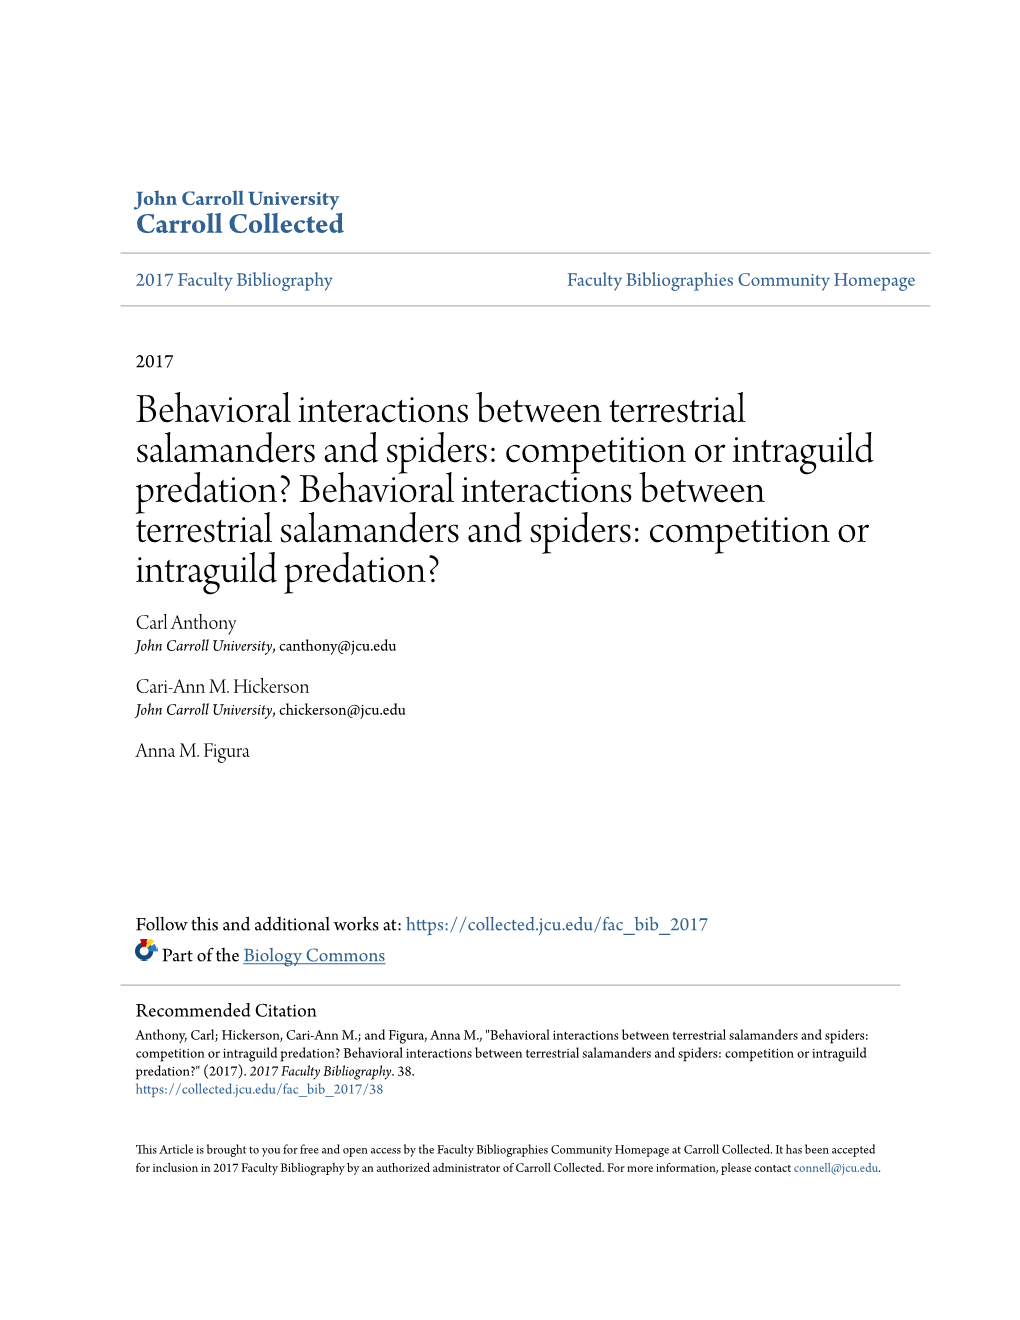 Behavioral Interactions Between Terrestrial